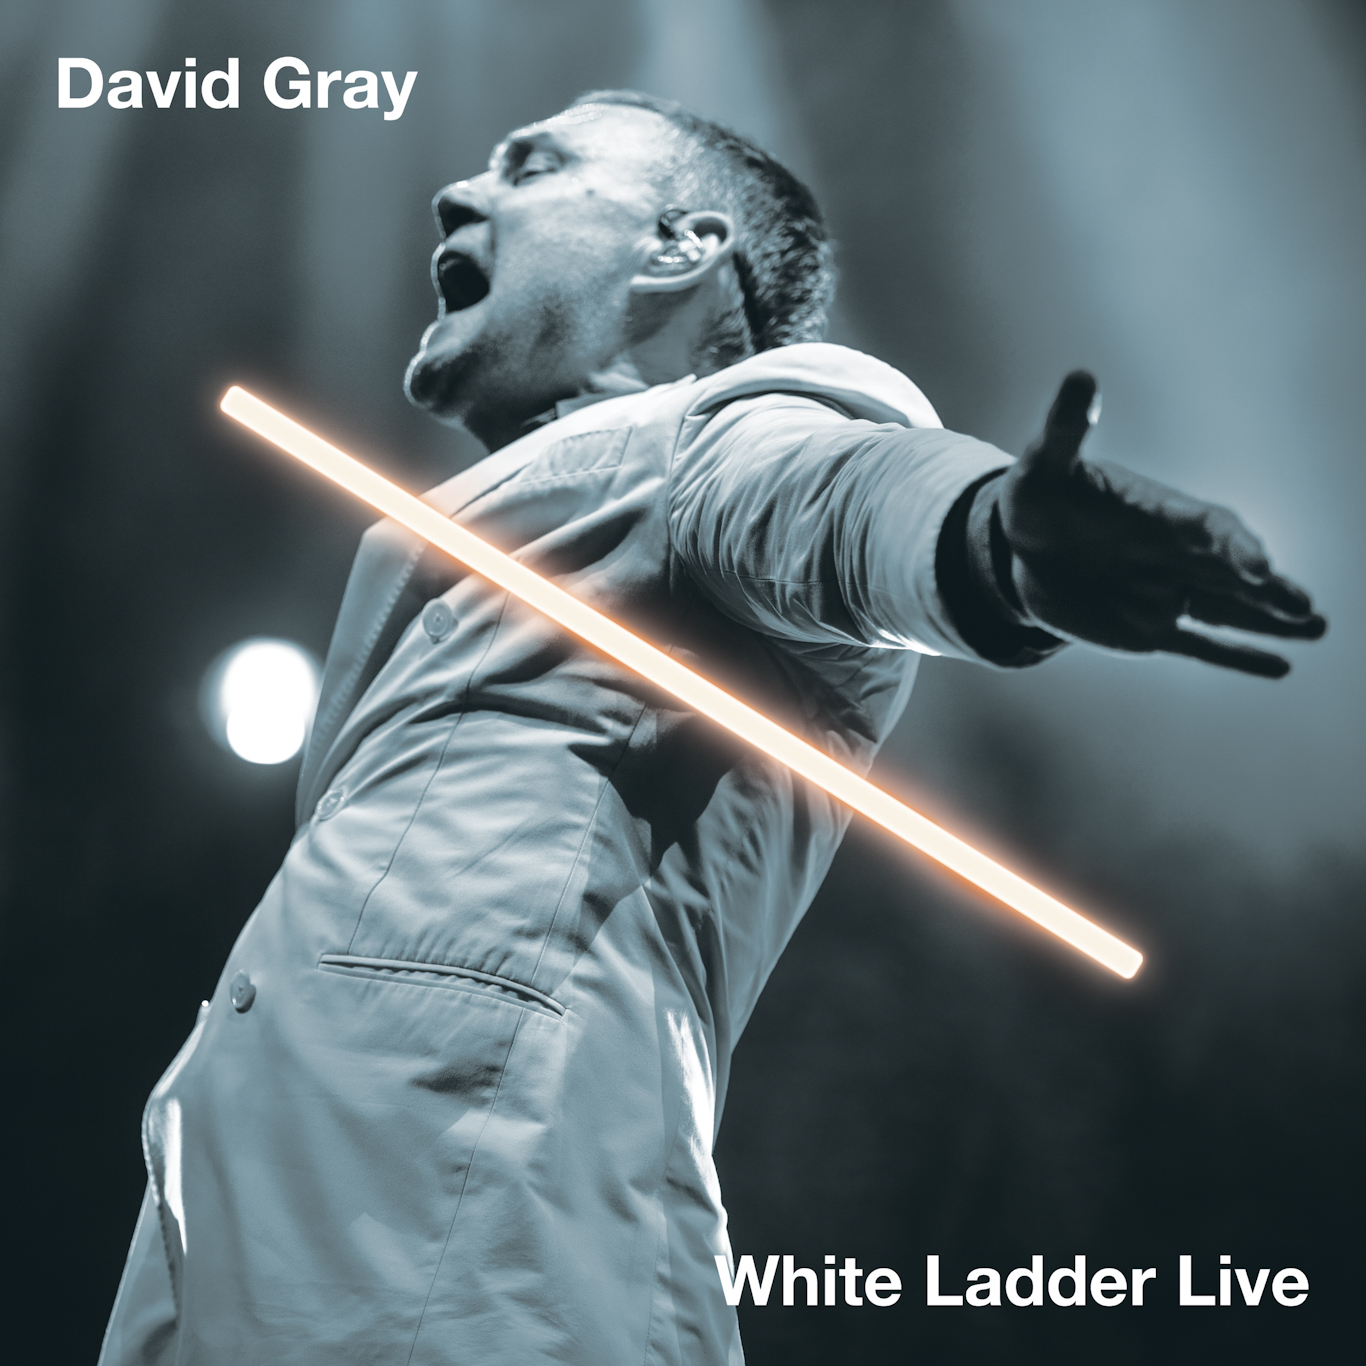 White Ladder Live